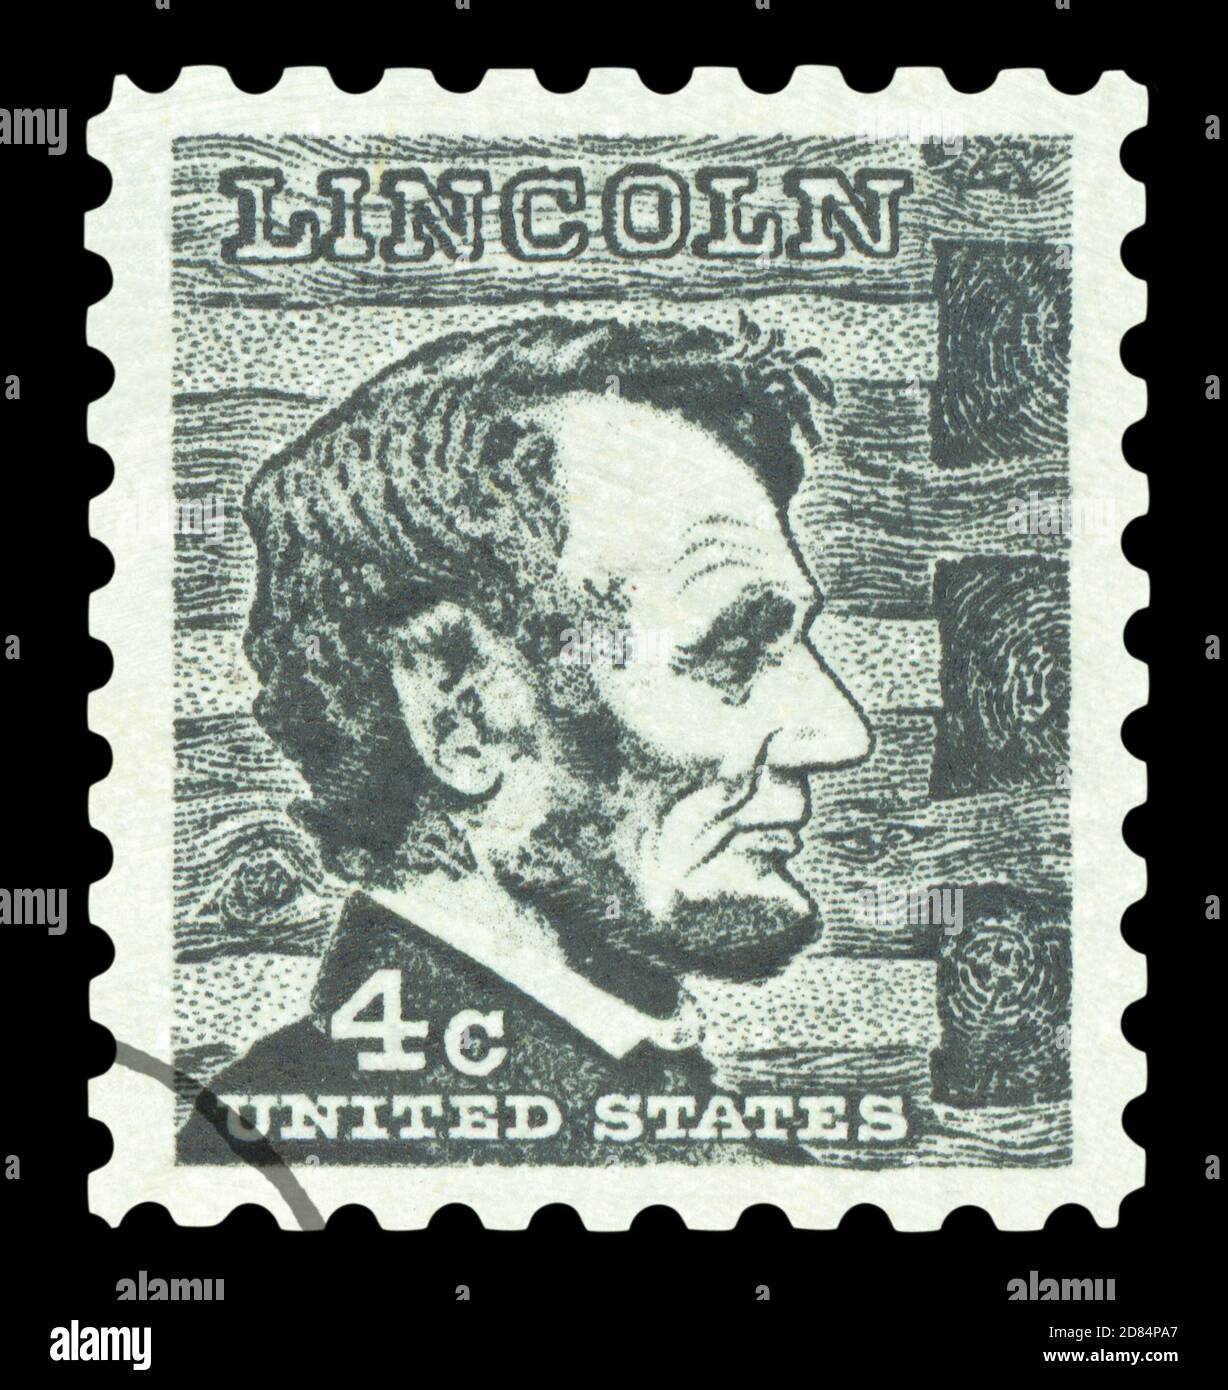 STATI UNITI D'AMERICA - CIRCA 1965: Un francobollo usato stampato negli Stati Uniti, raffigurante un'illustrazione del sedicesimo presidente degli Stati Uniti, Abra Foto Stock